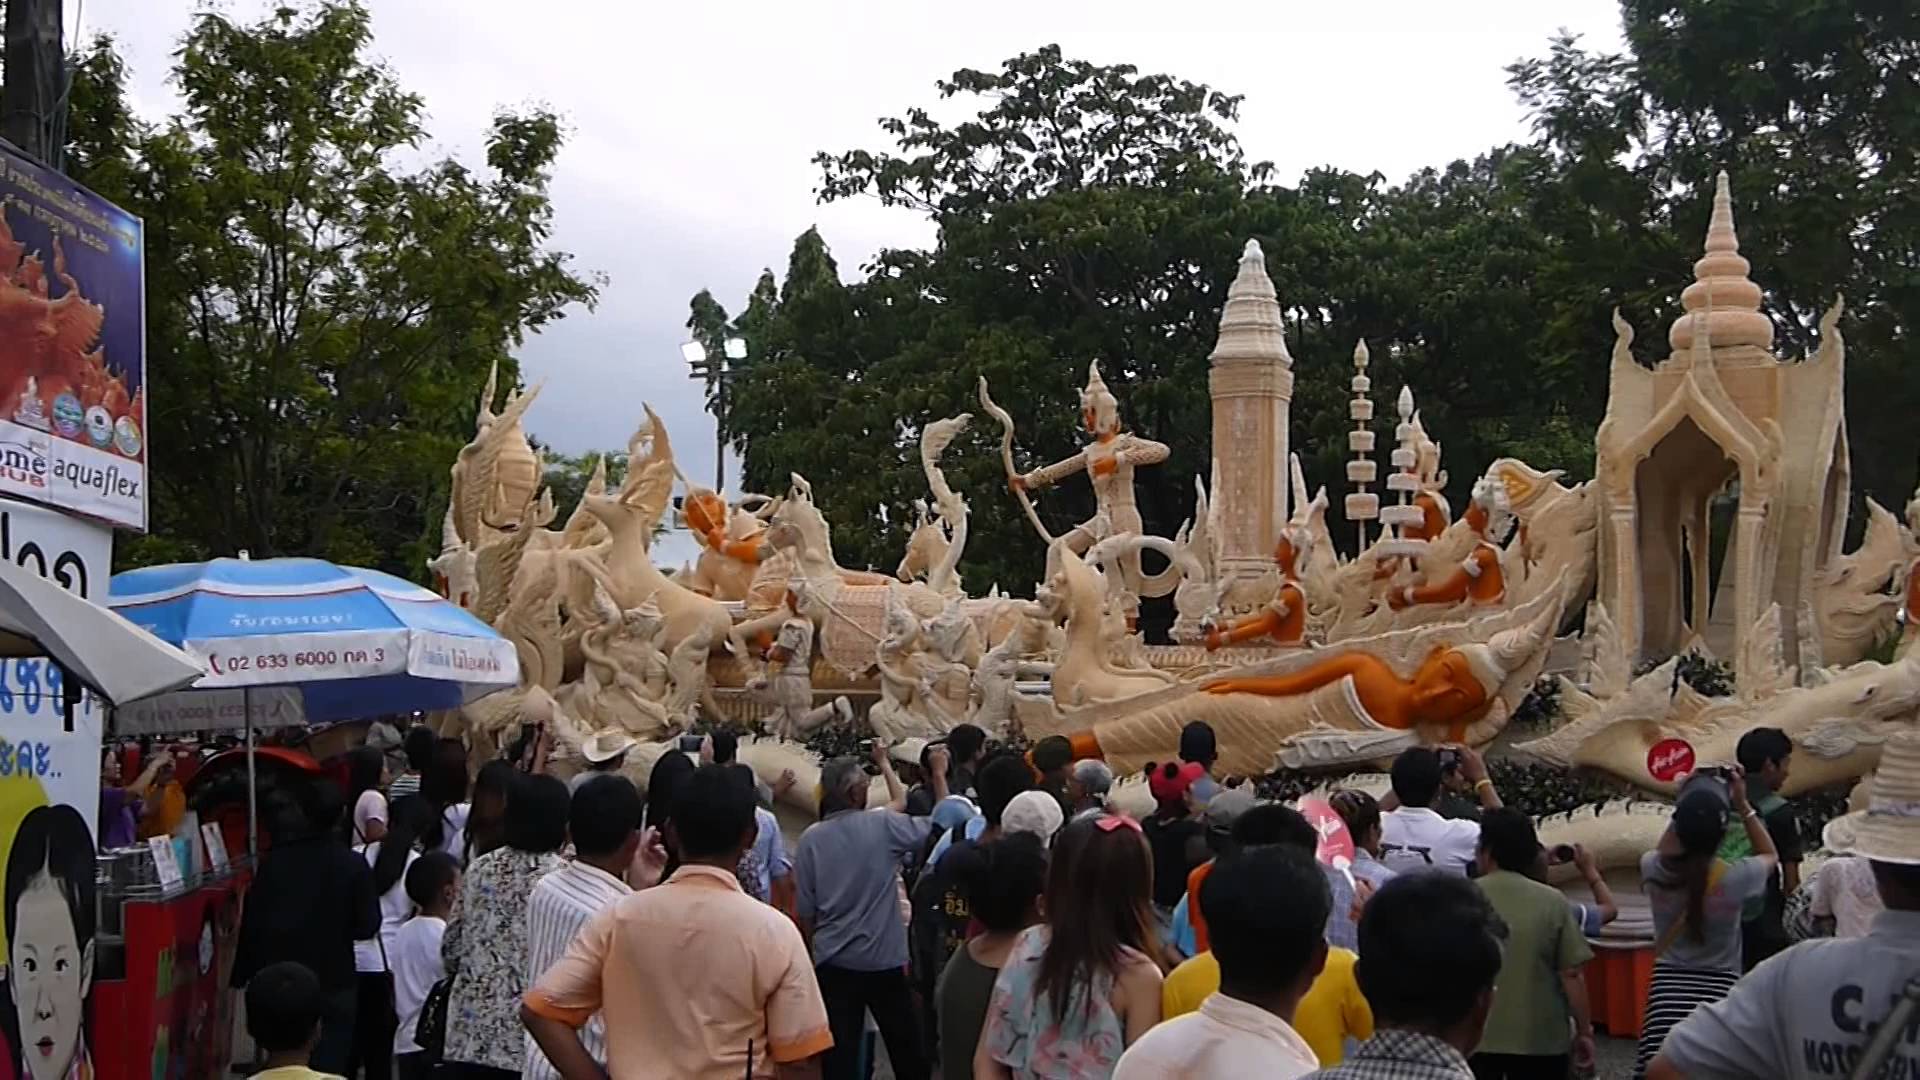 Ubon Ratchathani Candle Festival 2014. Part 1 of 5. - YouTube